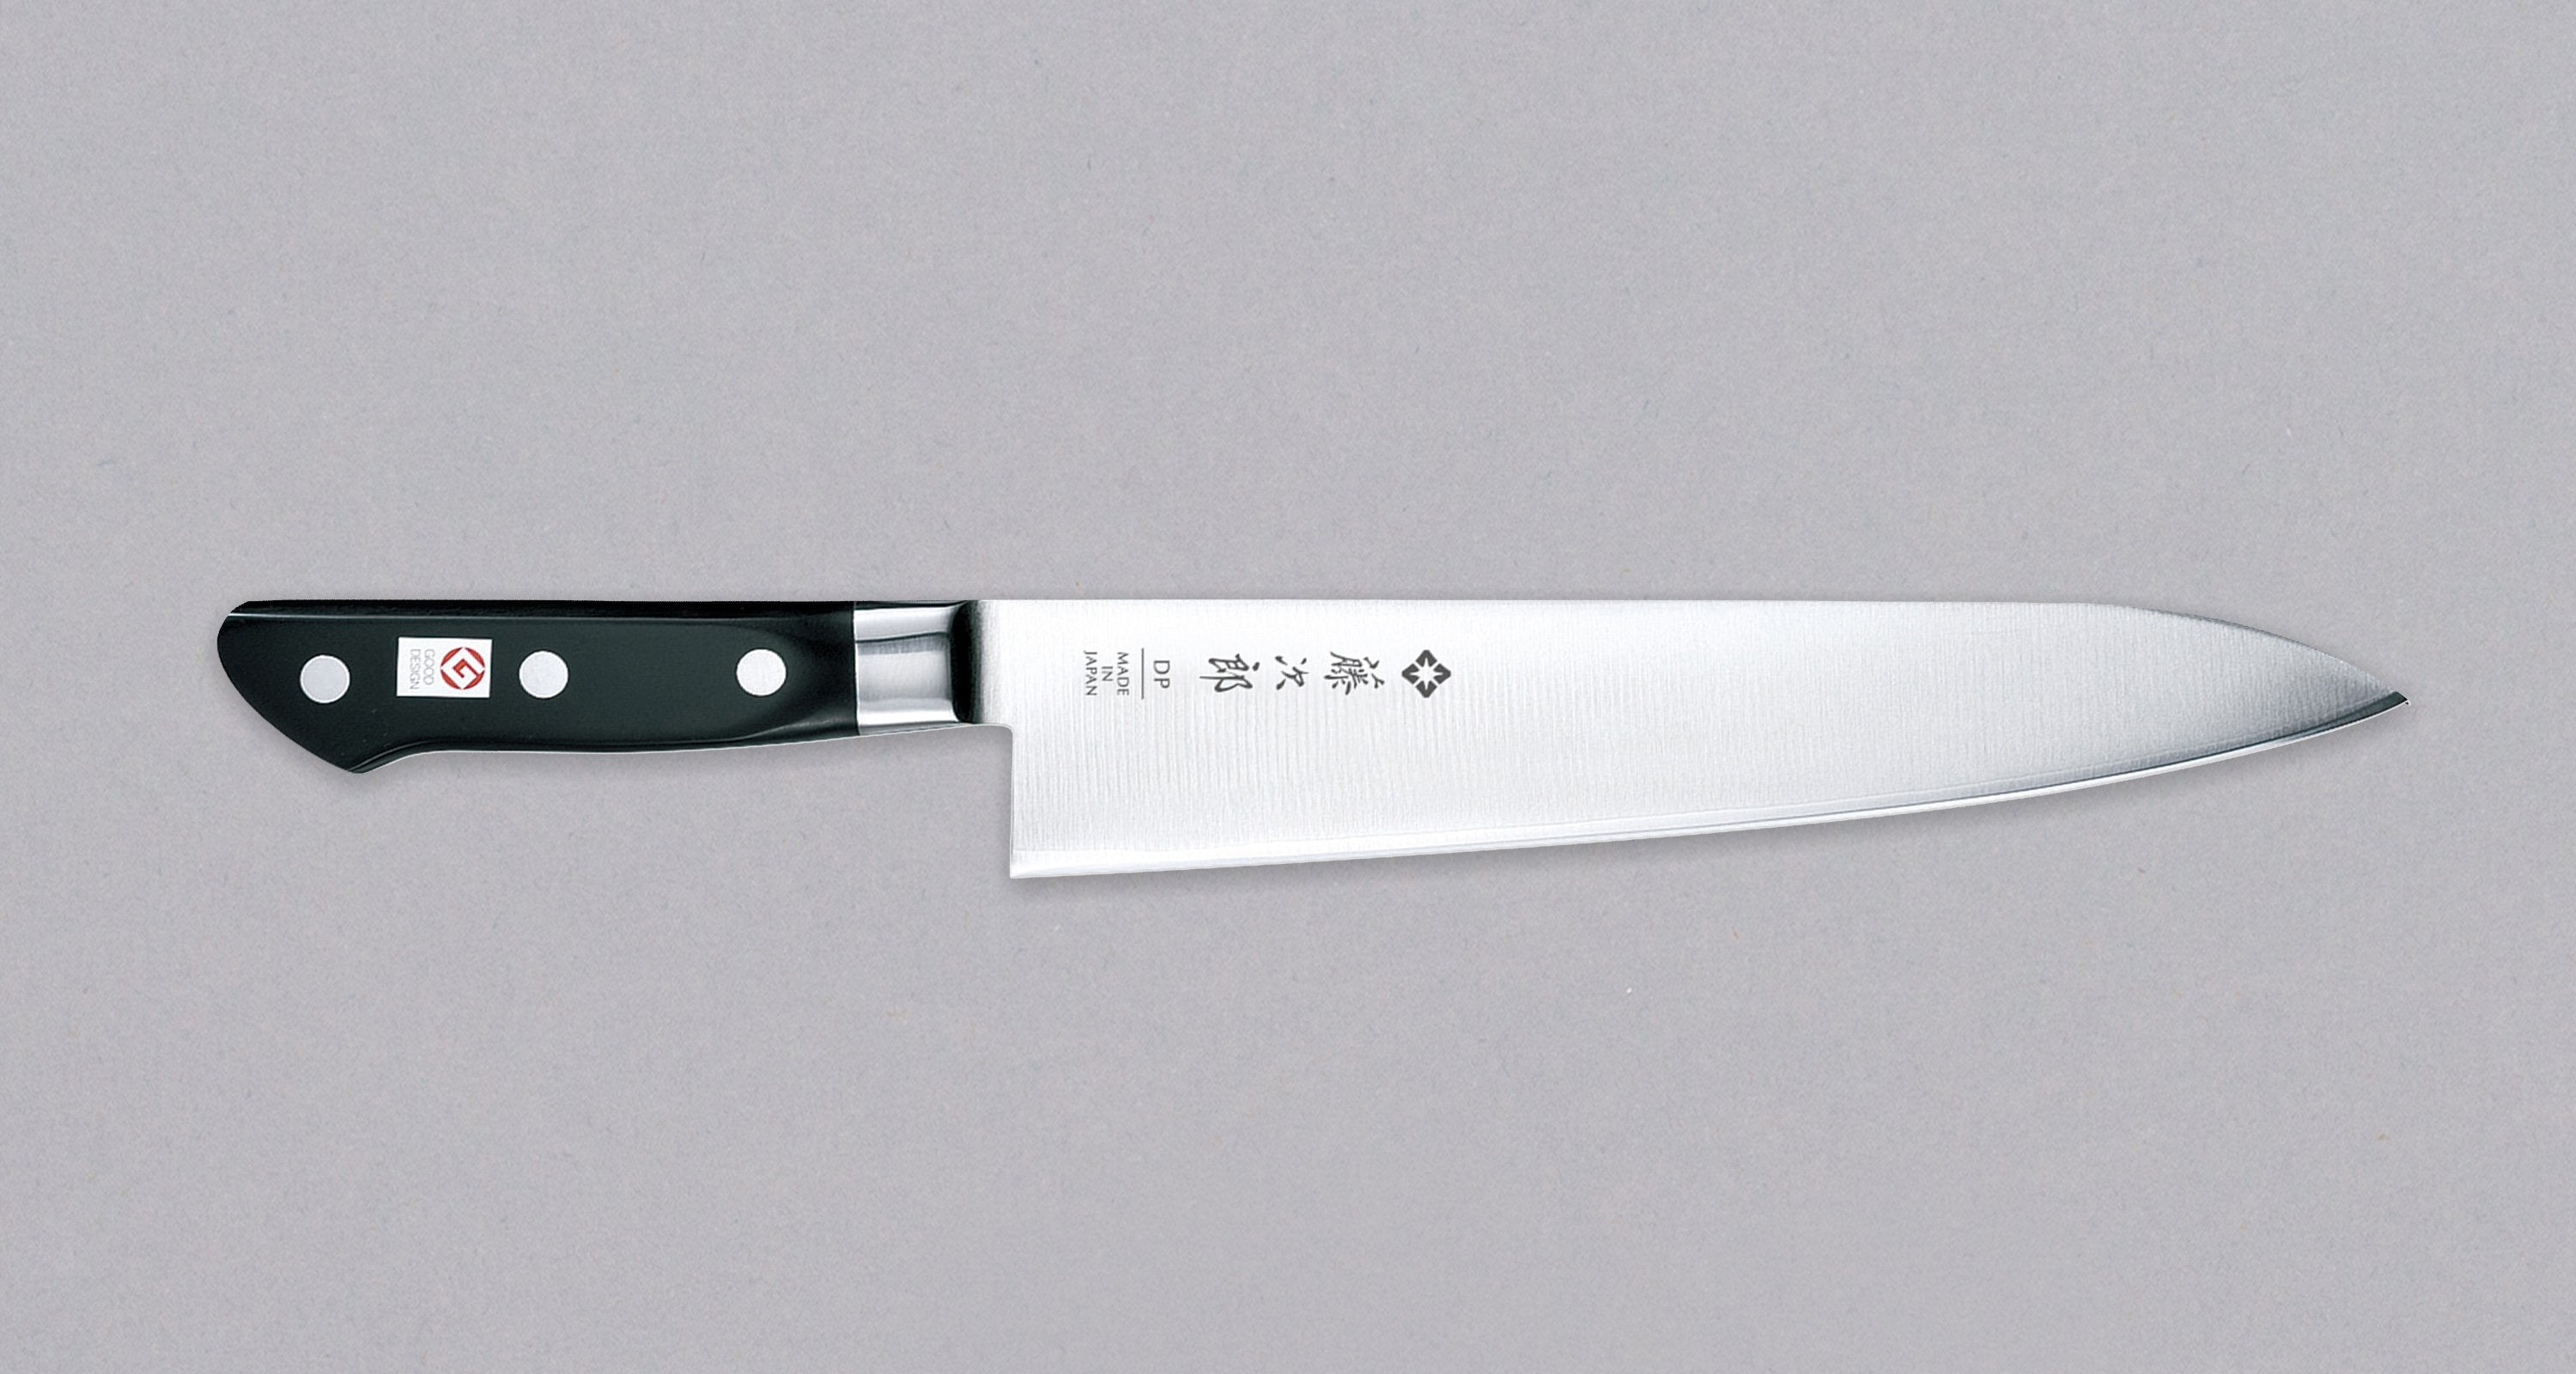 Tojiro Bread Knife 240mm